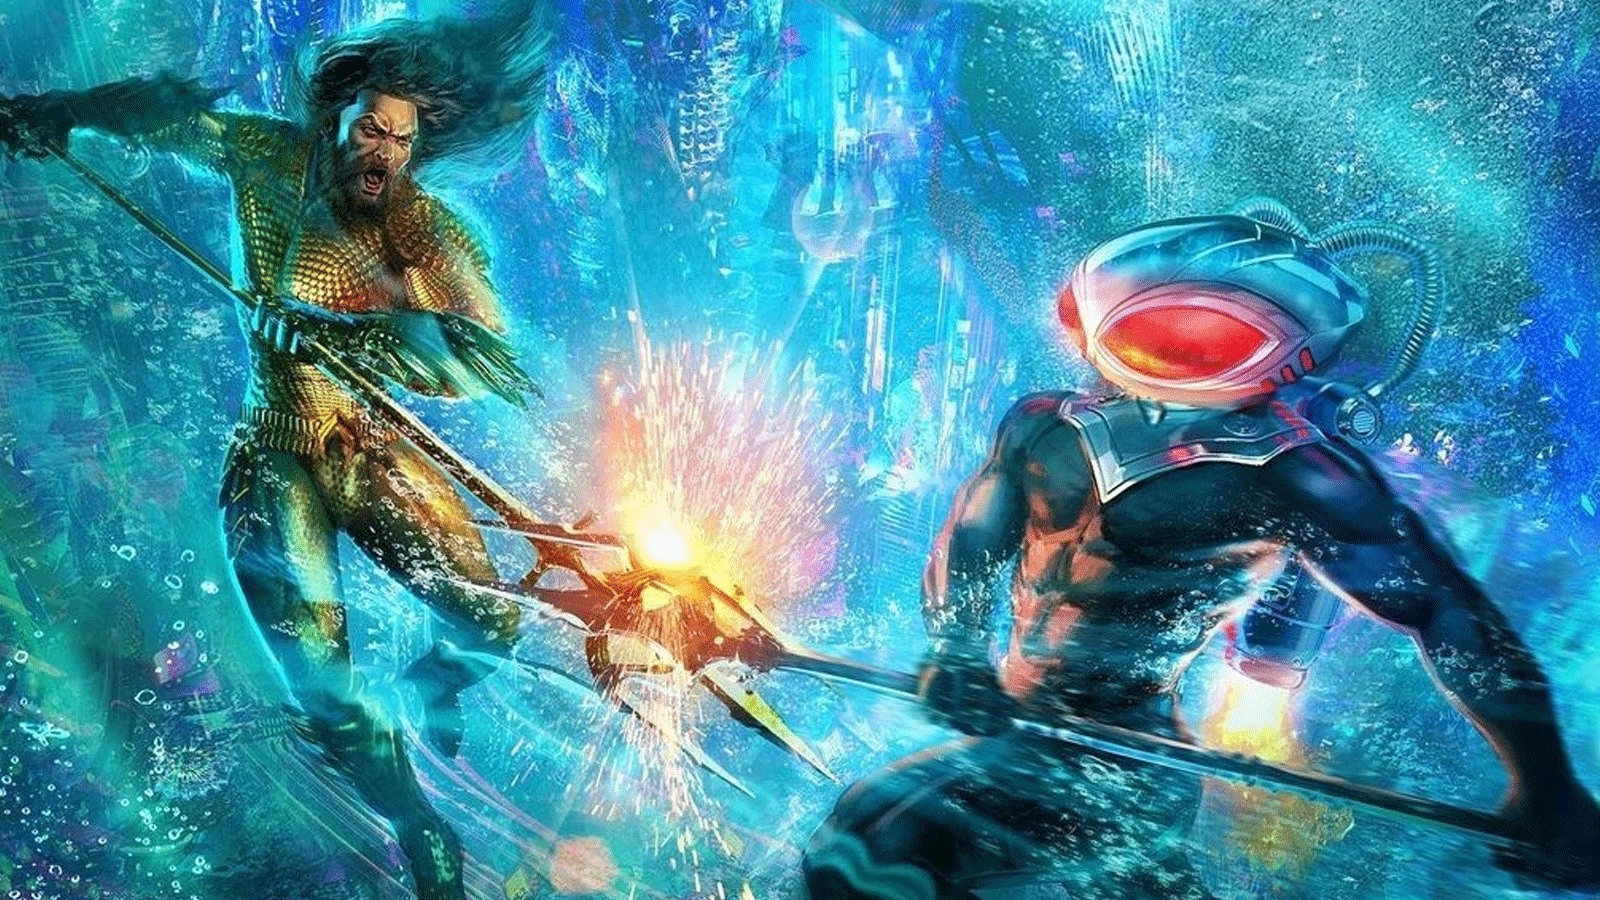 فیلم Aquaman and the Lost Kingdom، یکی از بهترین فیلم های اکشن و تخیلی